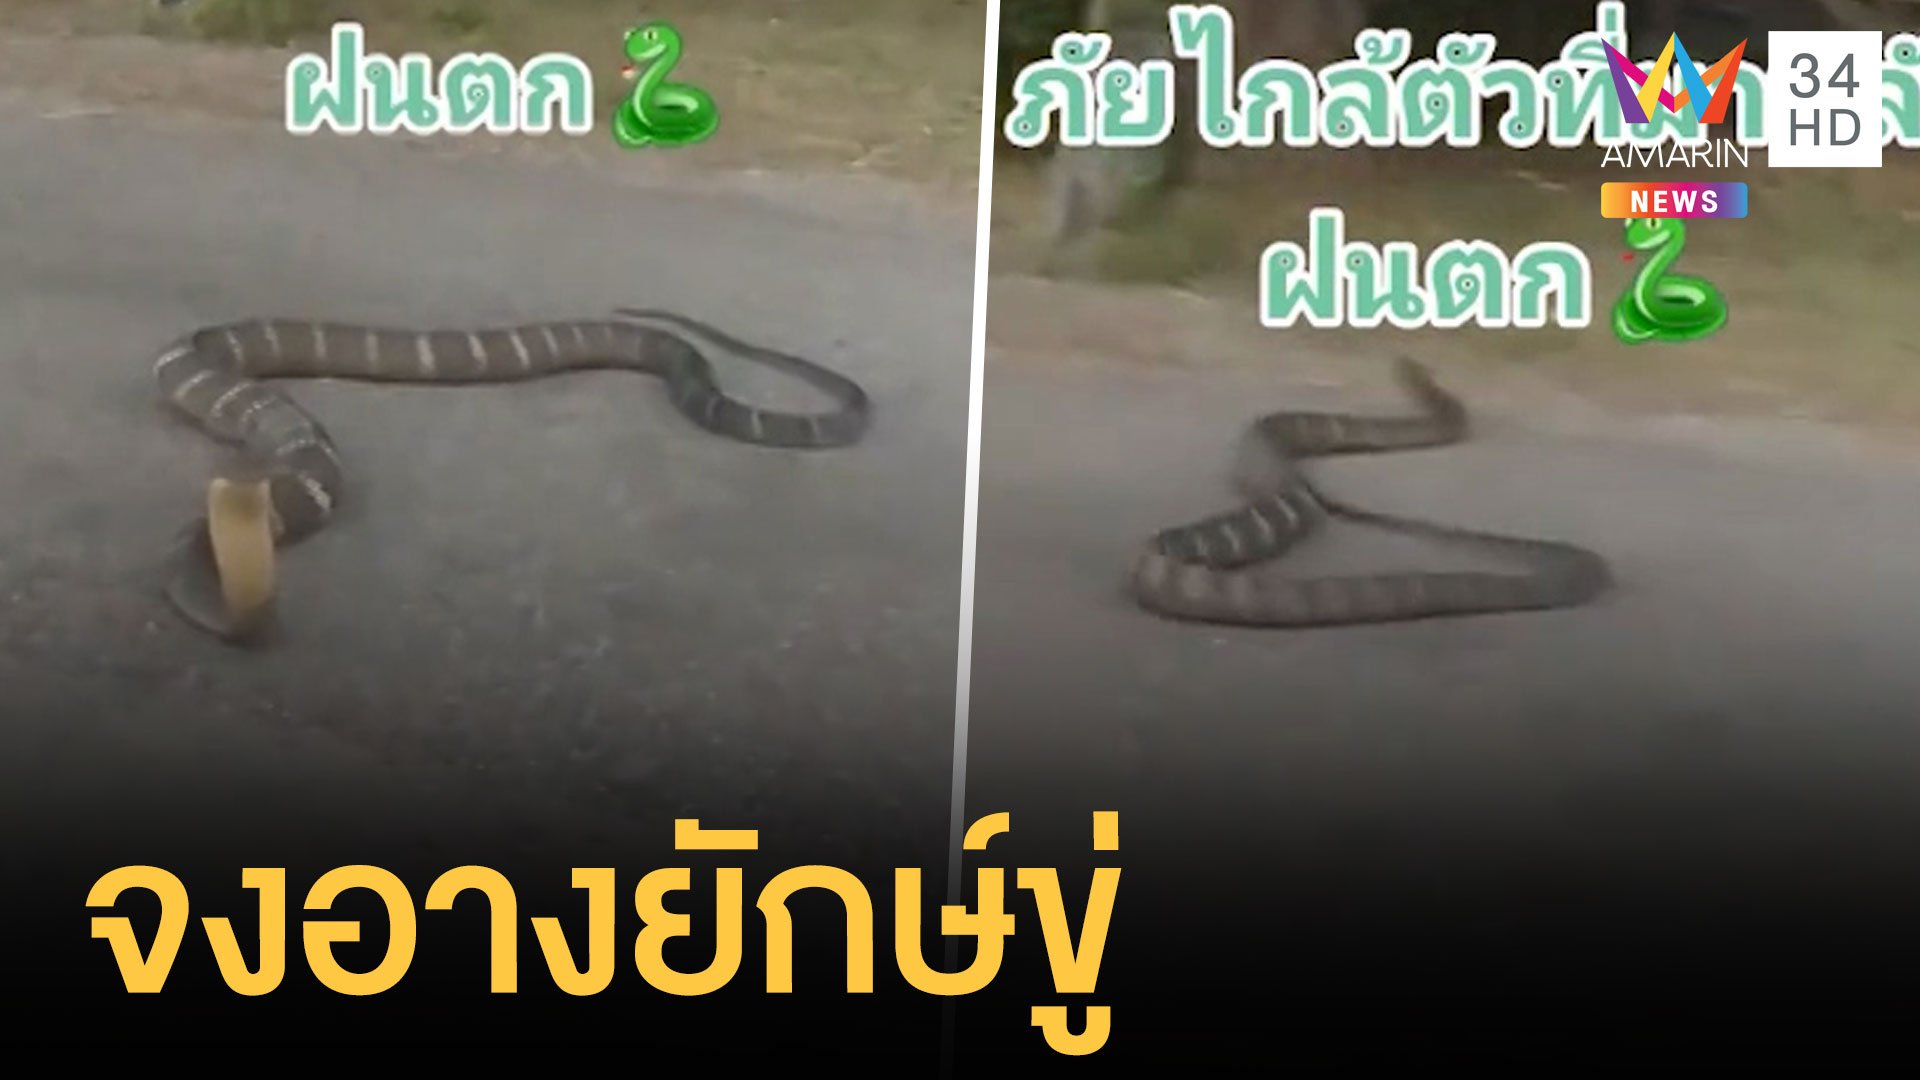 งูจงอางยักษ์แผ่แม่เบี้ยแถมเลื้อยเข้าบ้าน | ข่าวอรุณอมรินทร์ | 17 ส.ค. 64 | AMARIN TVHD34